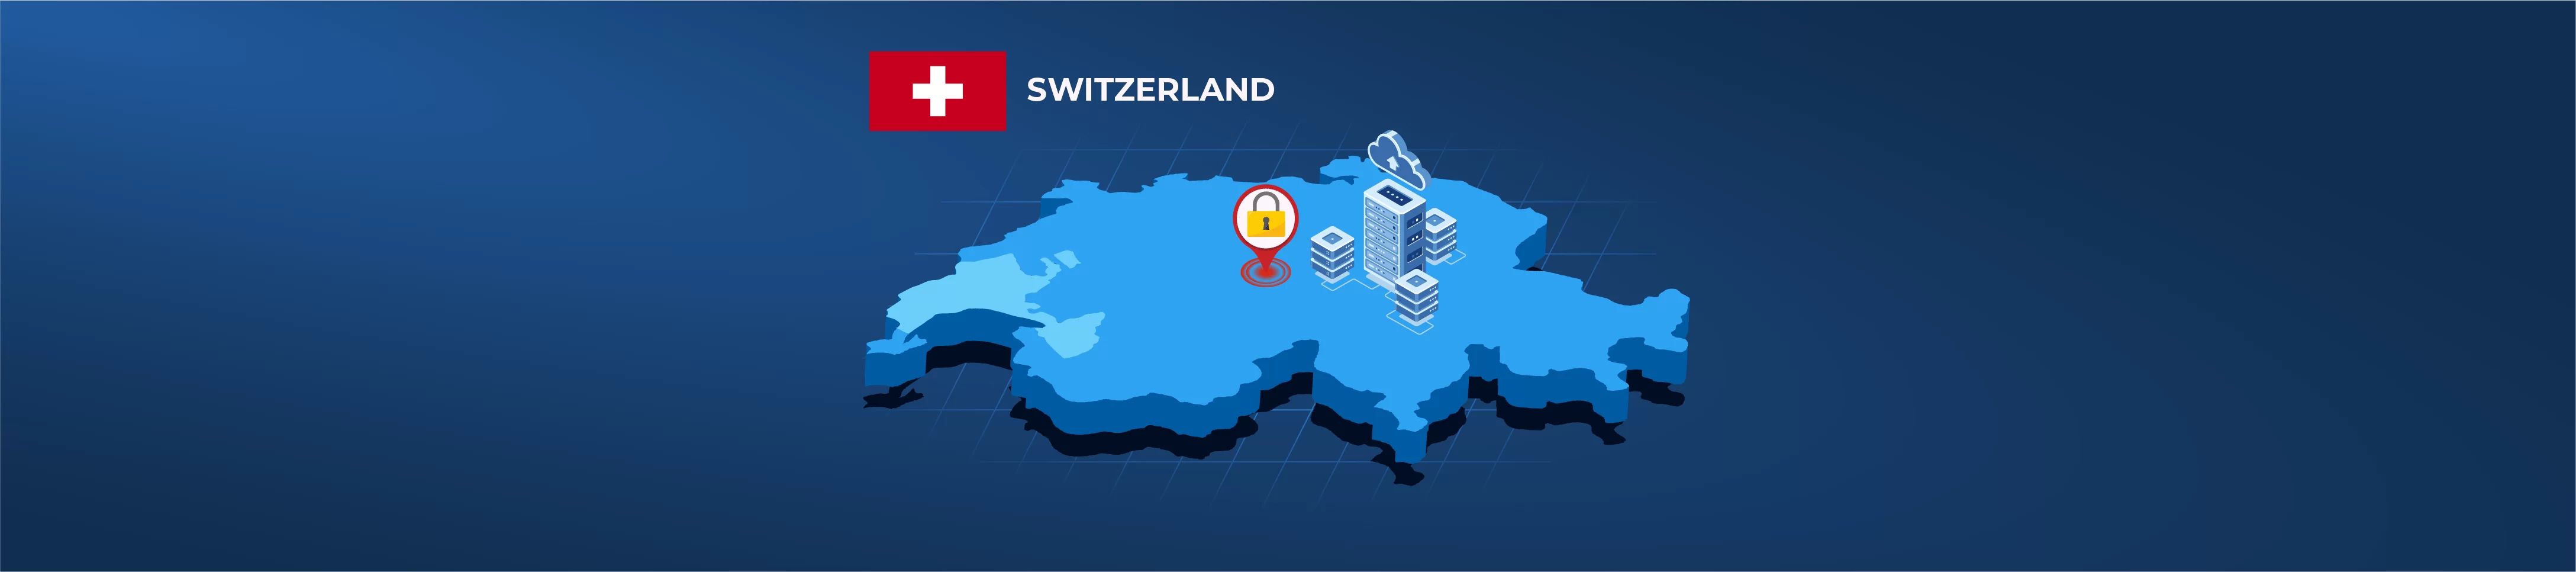 Illustration IT-Infrastruktur in der Schweiz